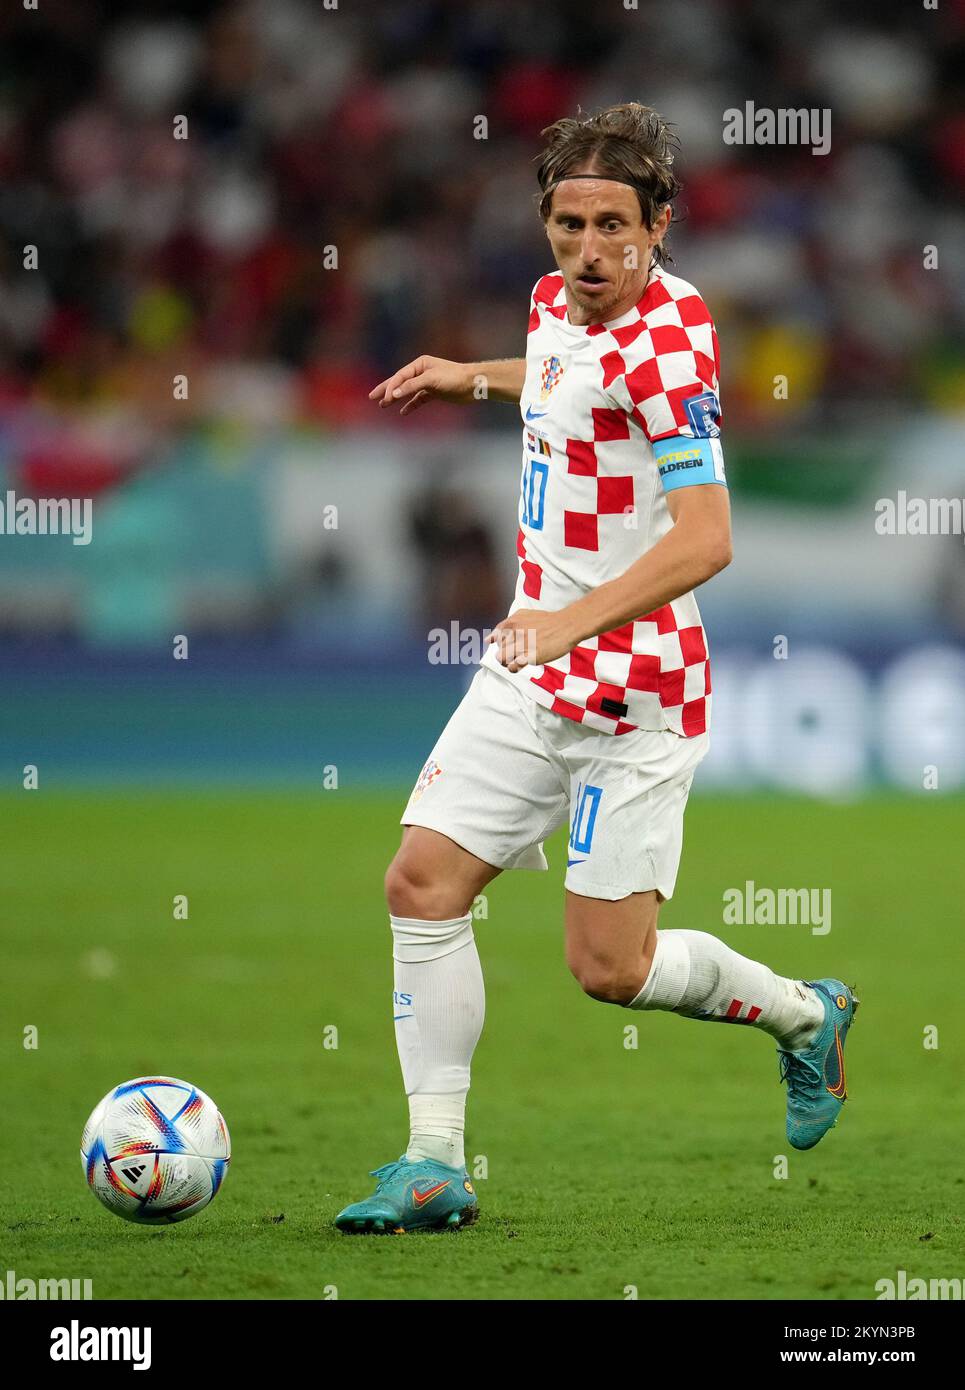 Luka Modric della Croazia durante la partita di Coppa del mondo FIFA Group F allo stadio Ahmad Bin Ali, al Rayyan, Qatar. Data immagine: Giovedì 1 dicembre 2022. Foto Stock